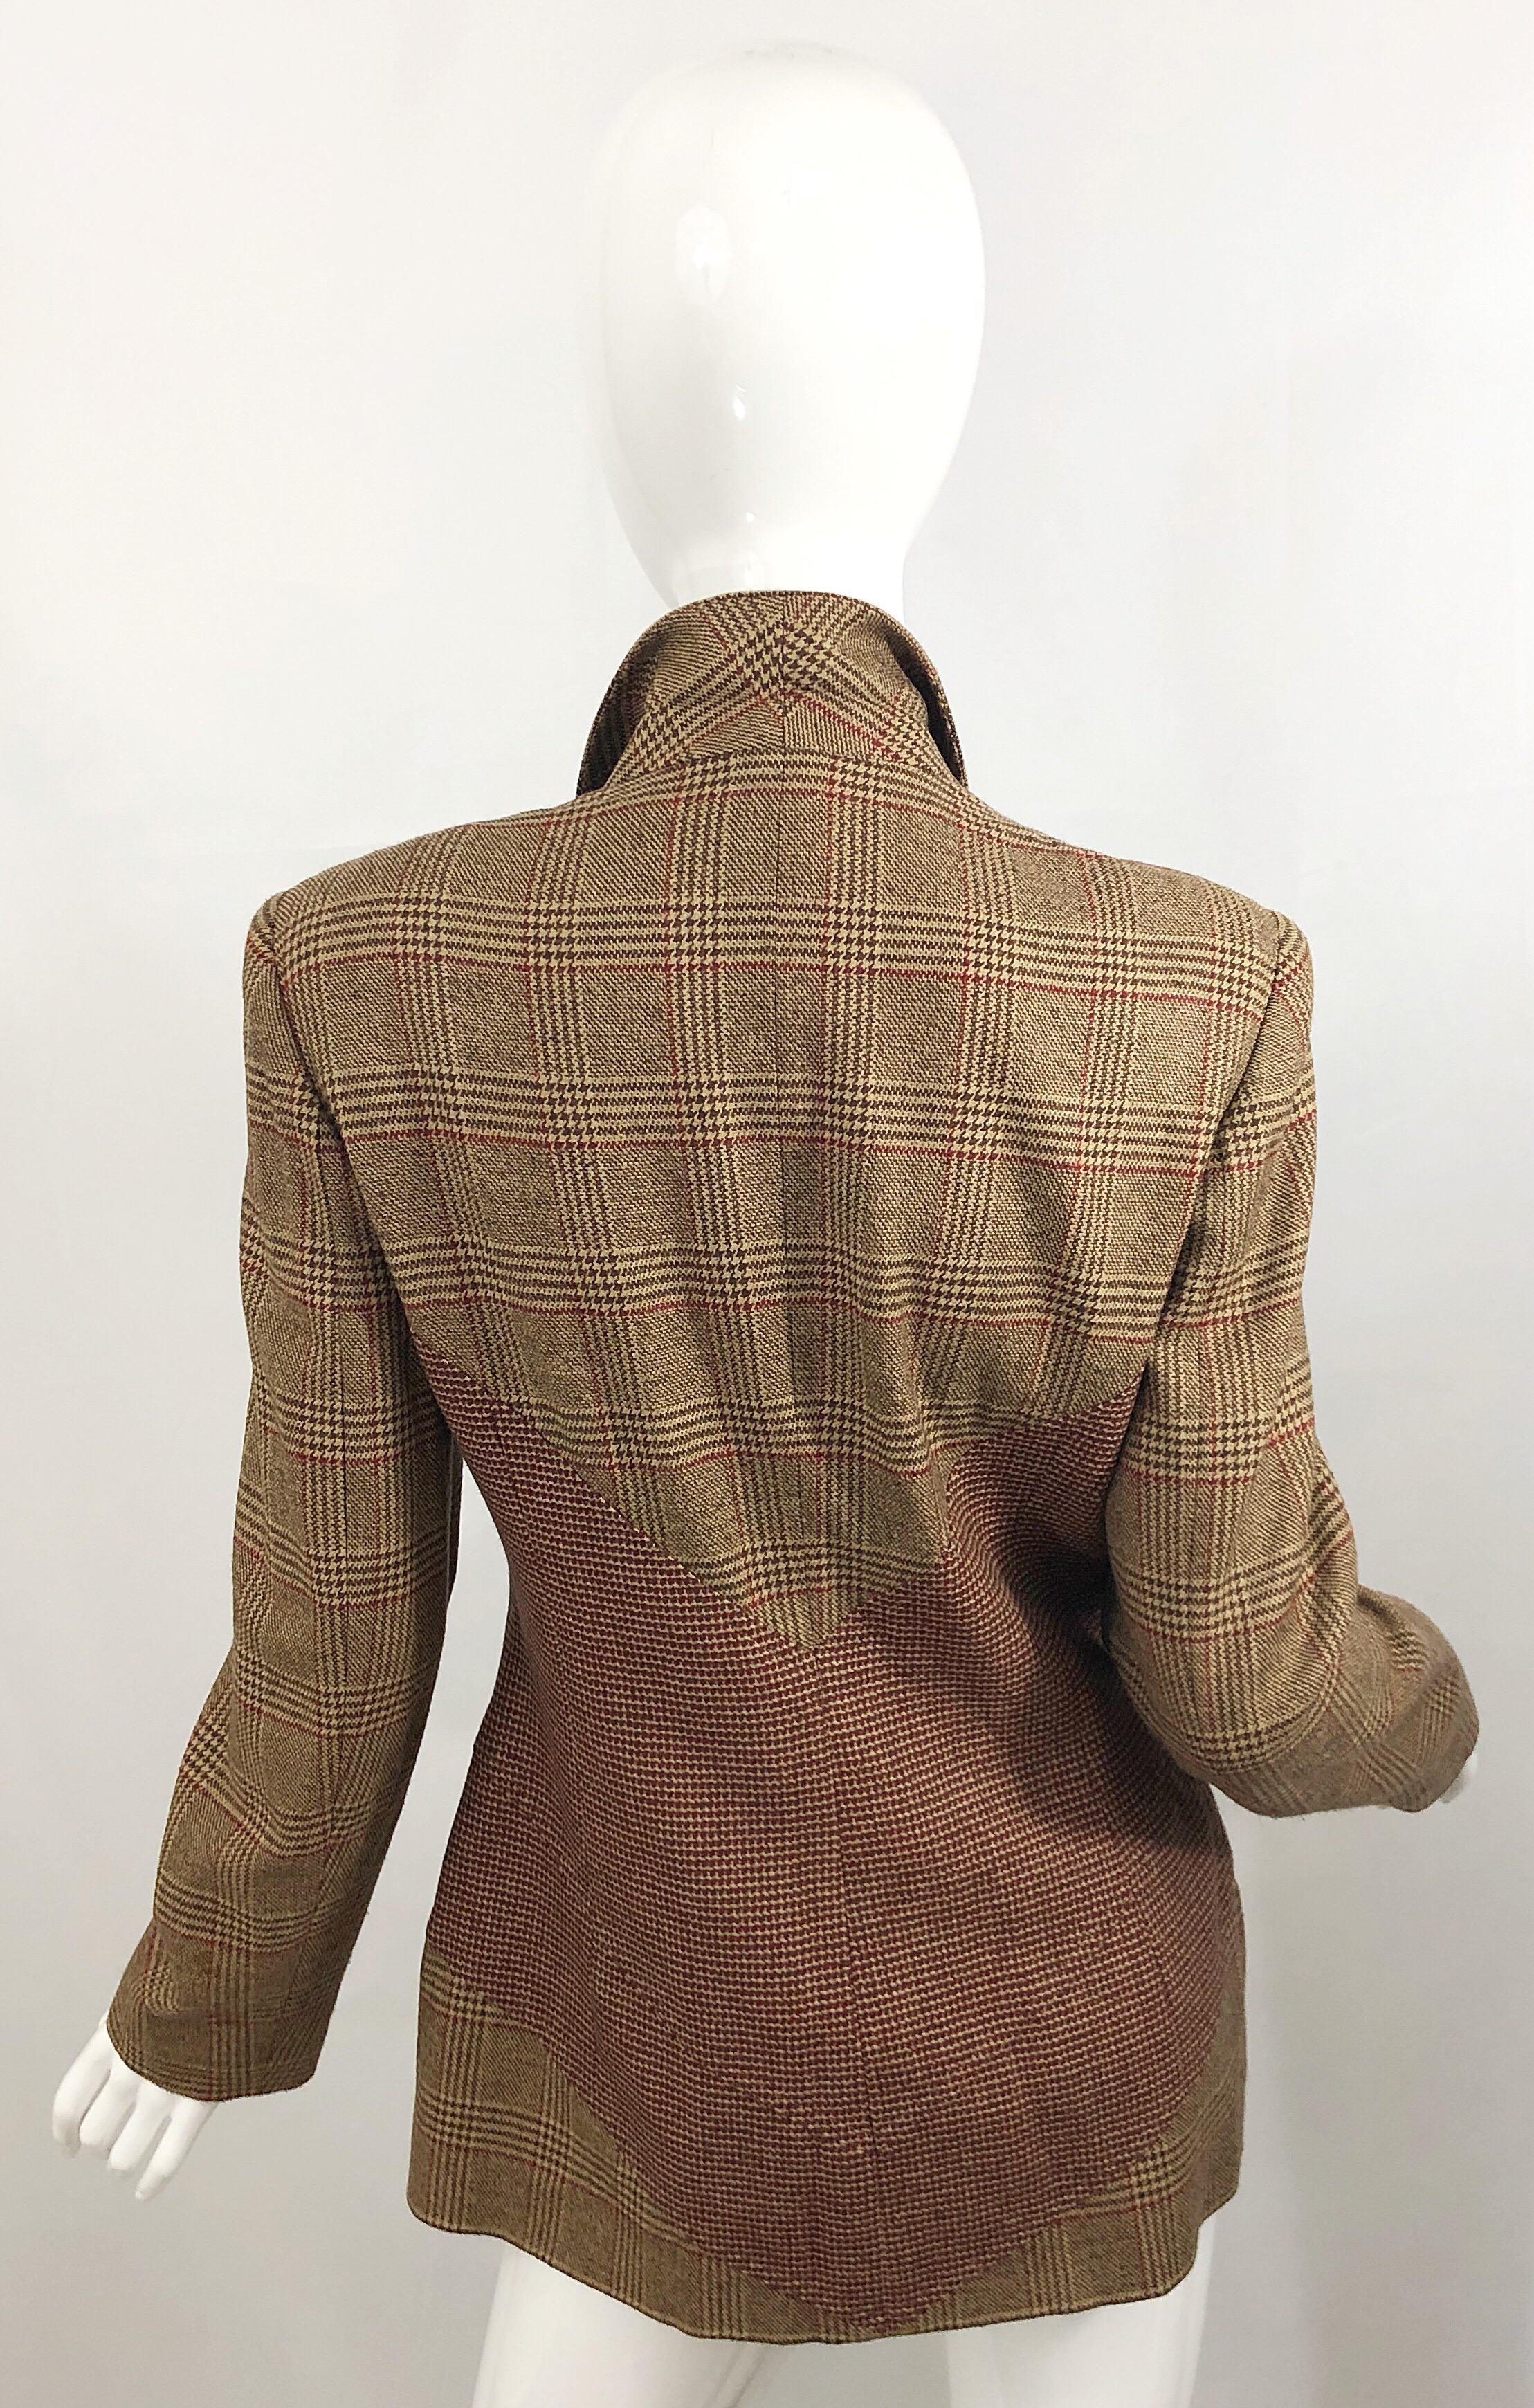 Avantgarde 90s ANGELO TARLAZZI doppelreihige Vintage-Blazer-Jacke! Mit braunem und kastanienbraunem/burgundfarbenem Hahnentrittmuster und durchgehendem Plaid. Schmeichelnder und schlank machender Kontrastdruck an der Taille. Knöpfe auf der